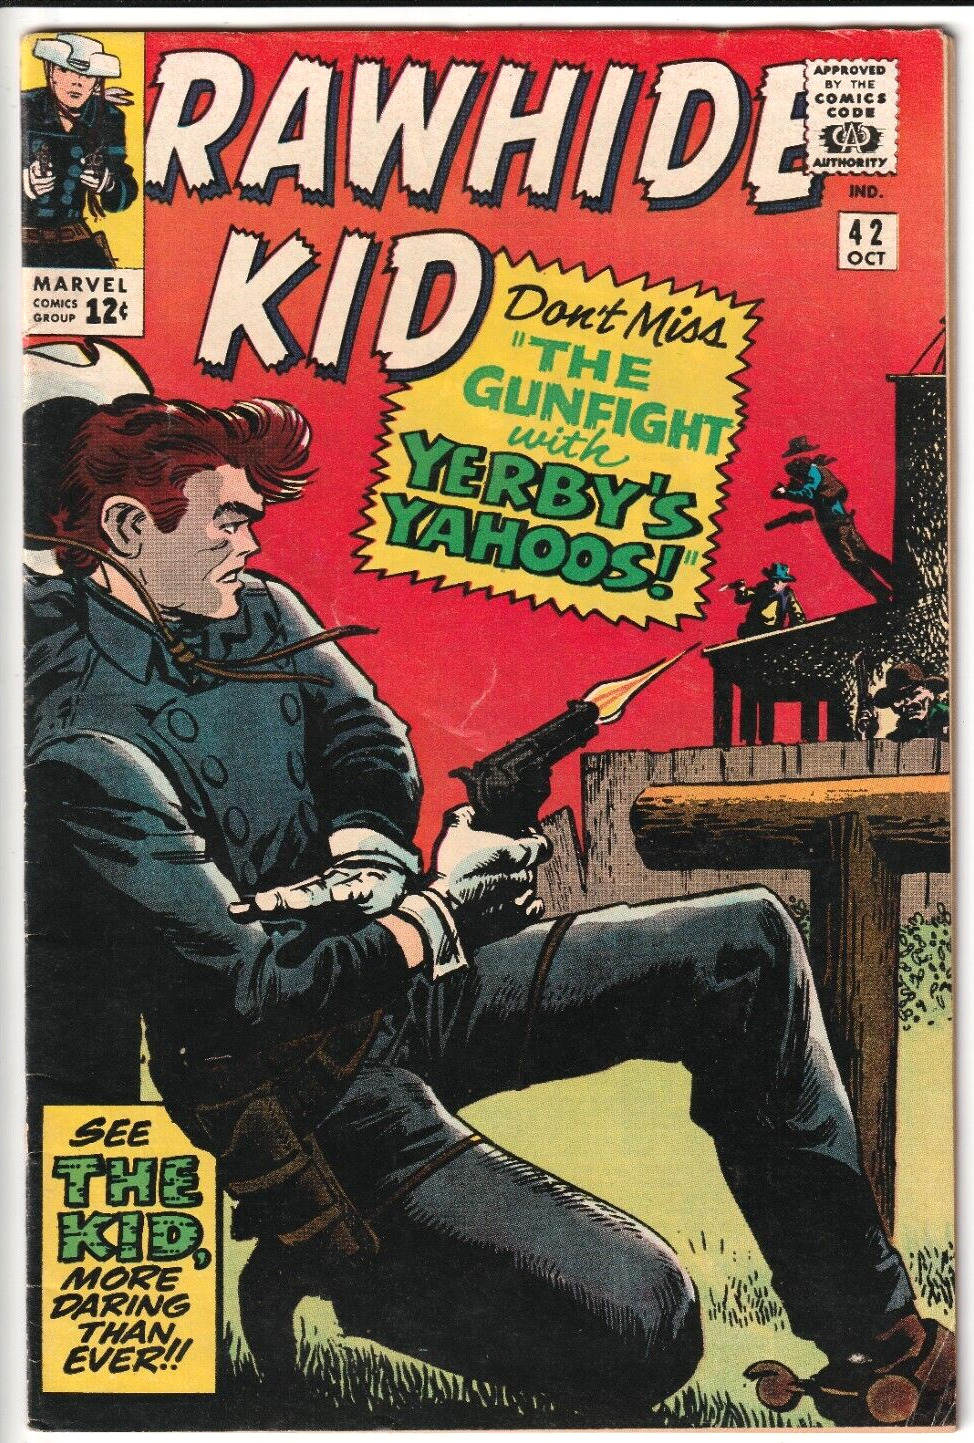 Rawhide Kid #42 1964 Marvel Comics 4.5 VG+ JACK KIRBY JOE MANEELY STAN LEE